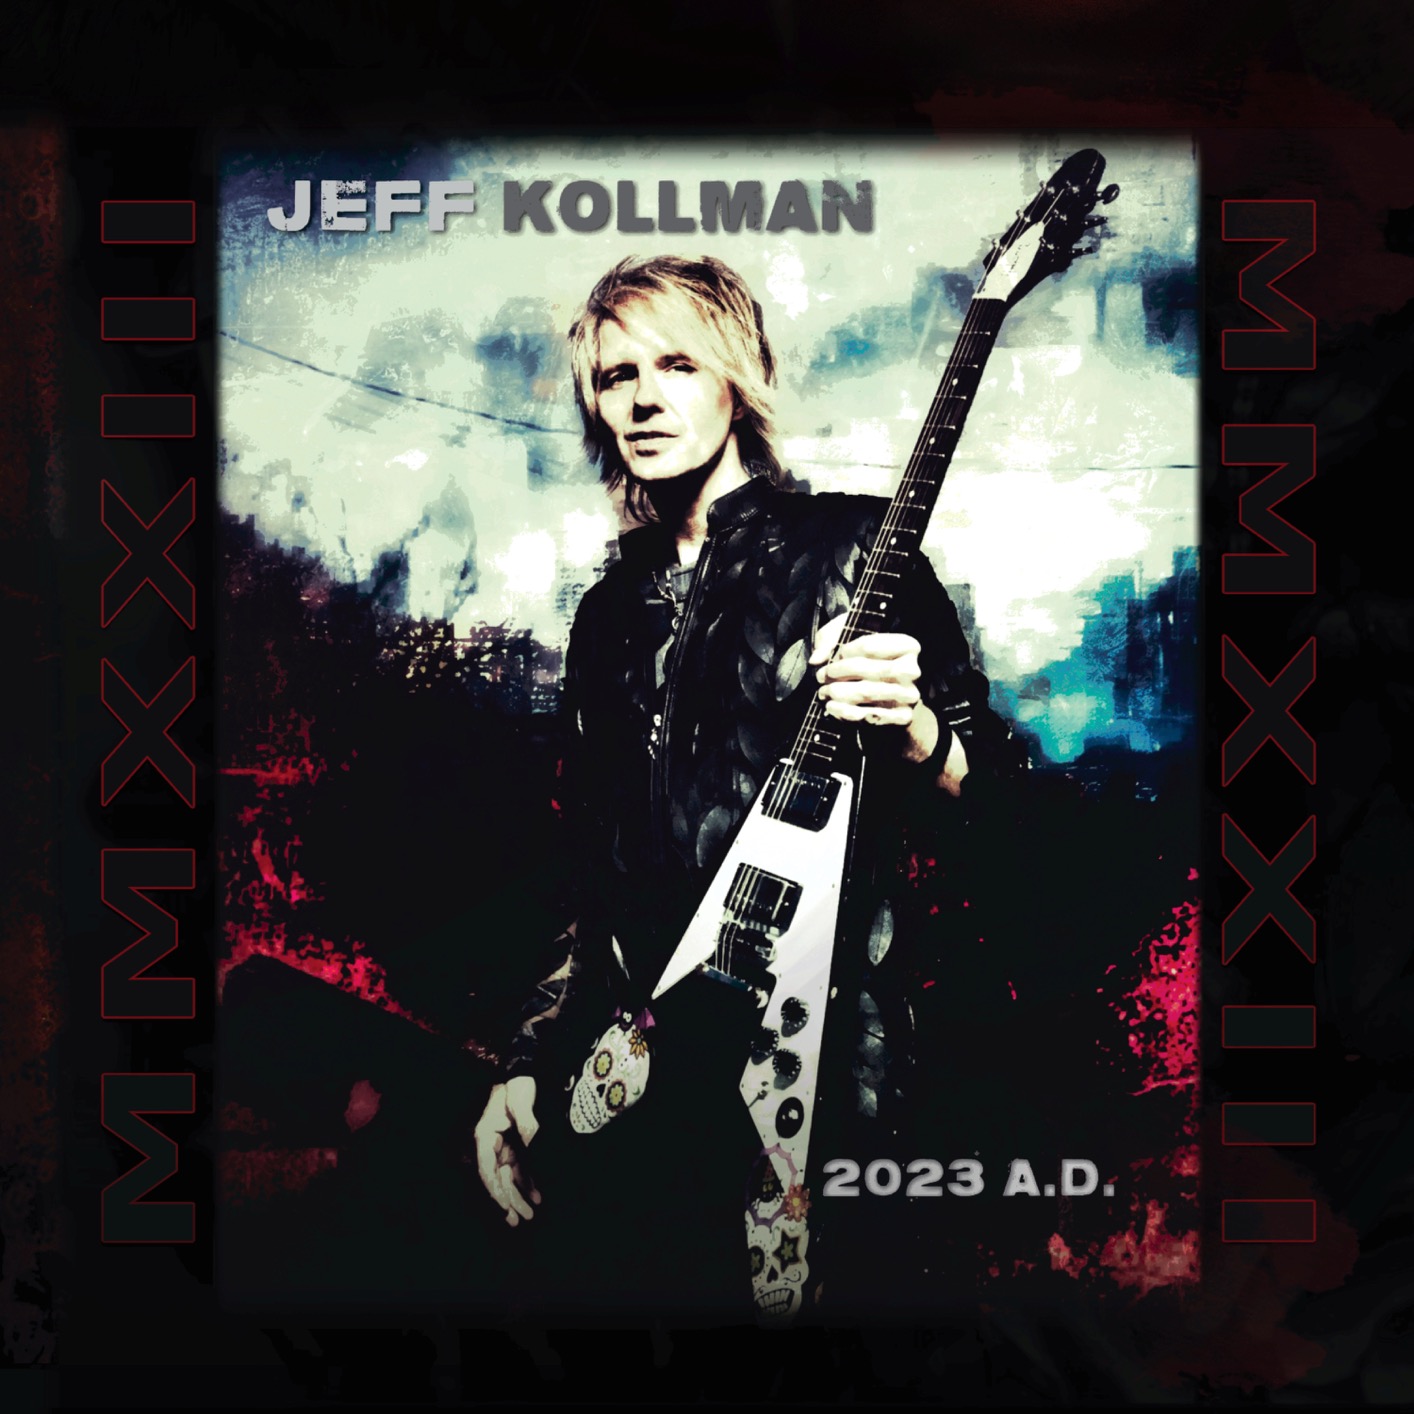 Jeff Kollman - 2024 - 2023 A.D.